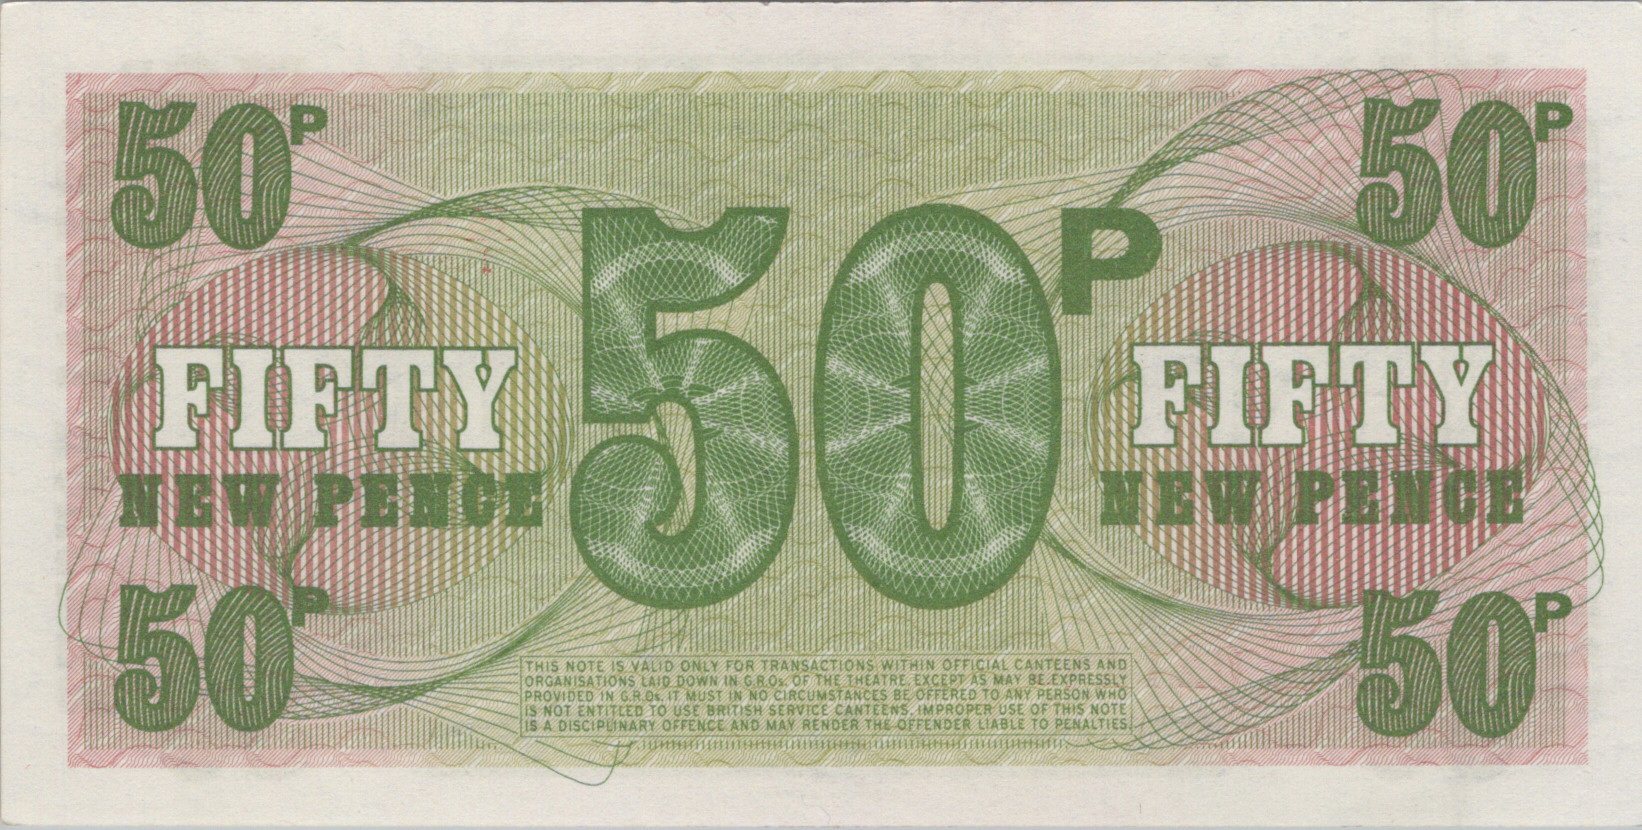 Anglicko 50 New Pence 1972